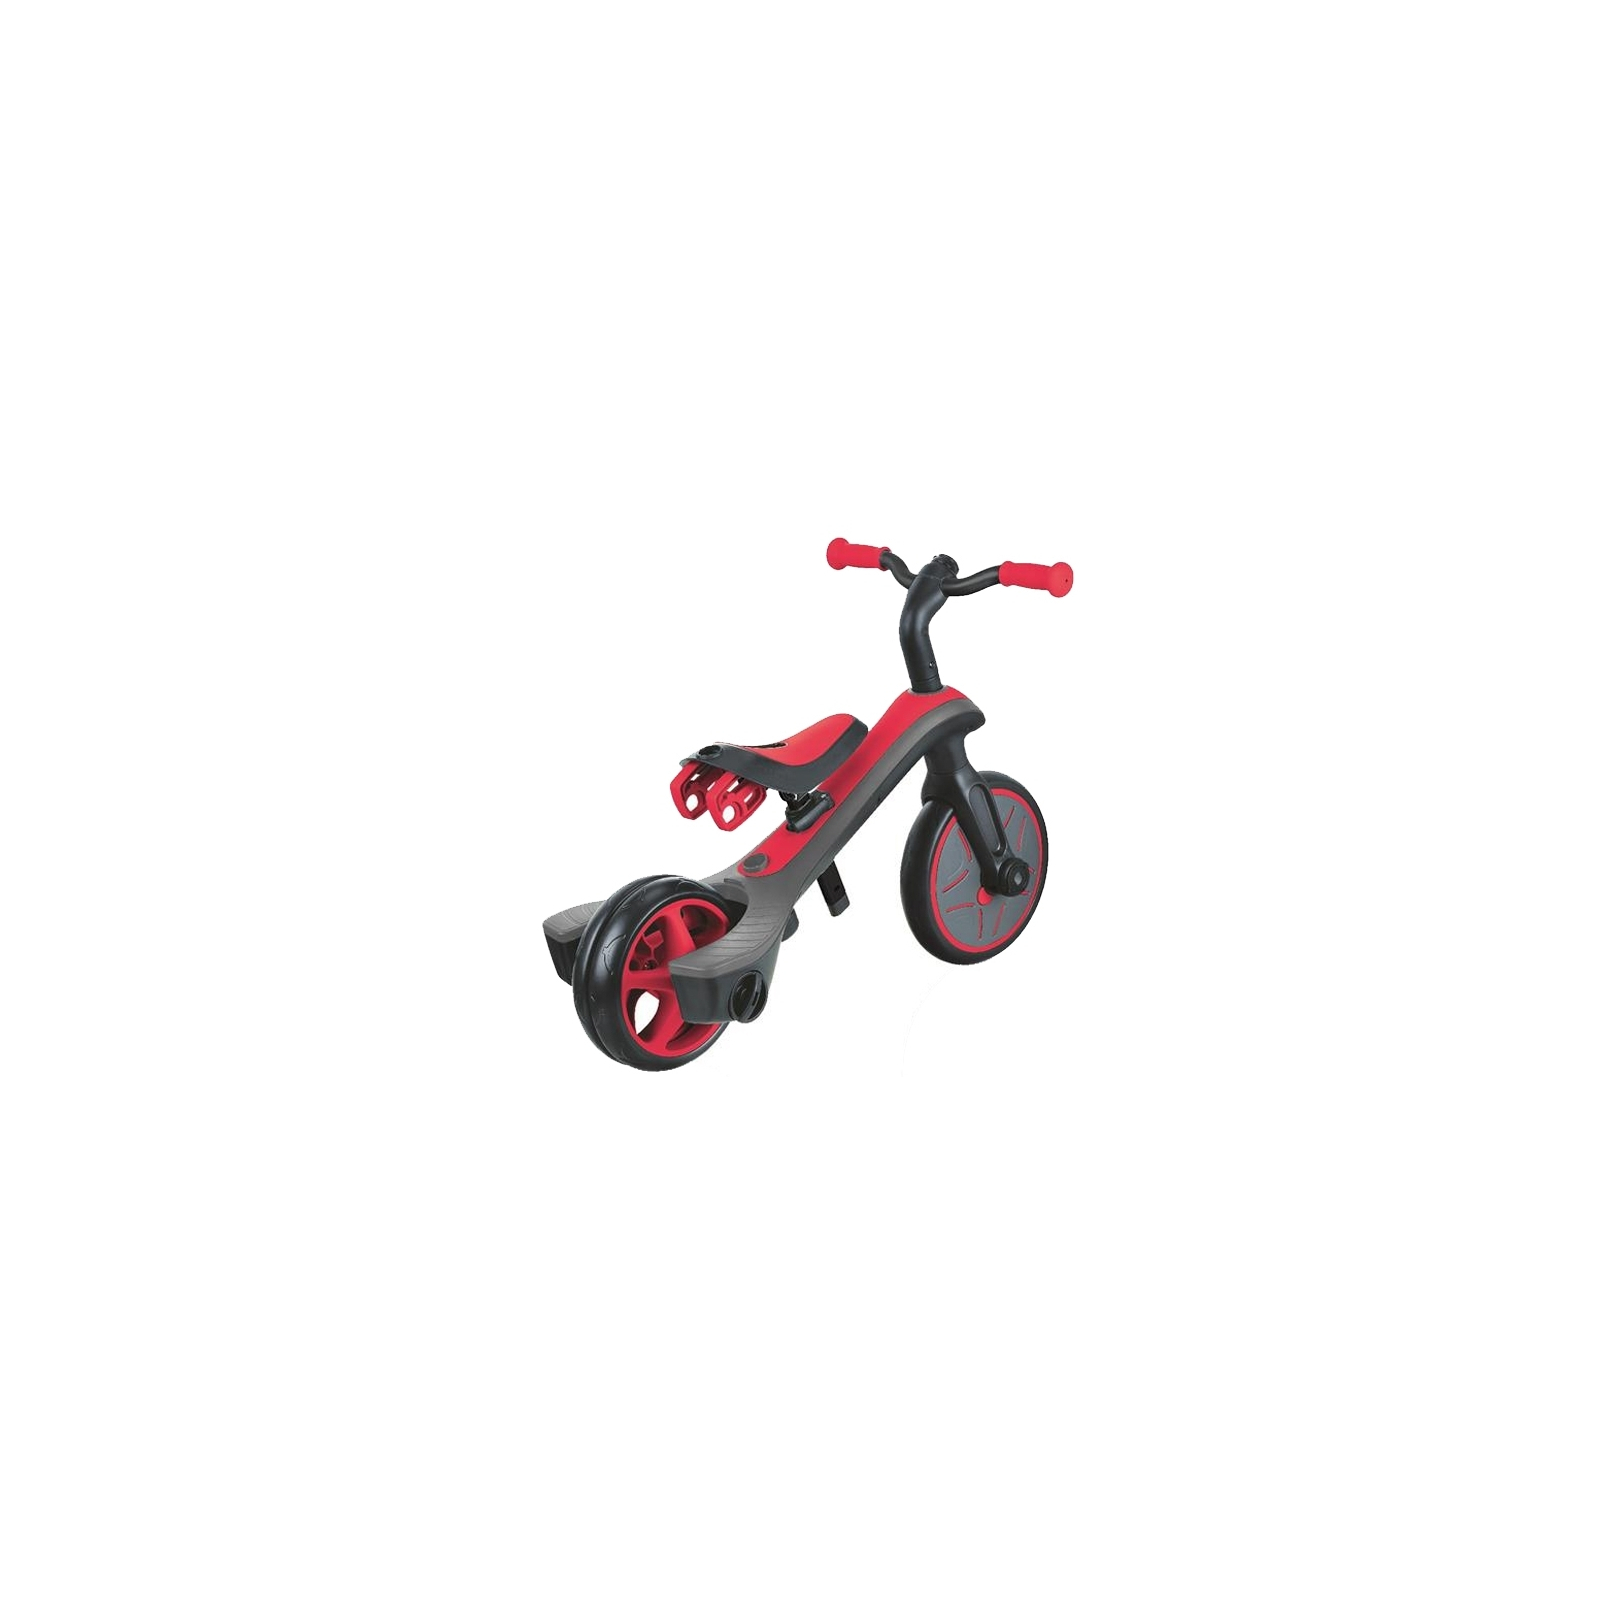 Дитячий велосипед Globber EXPLORER TRIKE 4в1 червоний (632-102) зображення 8